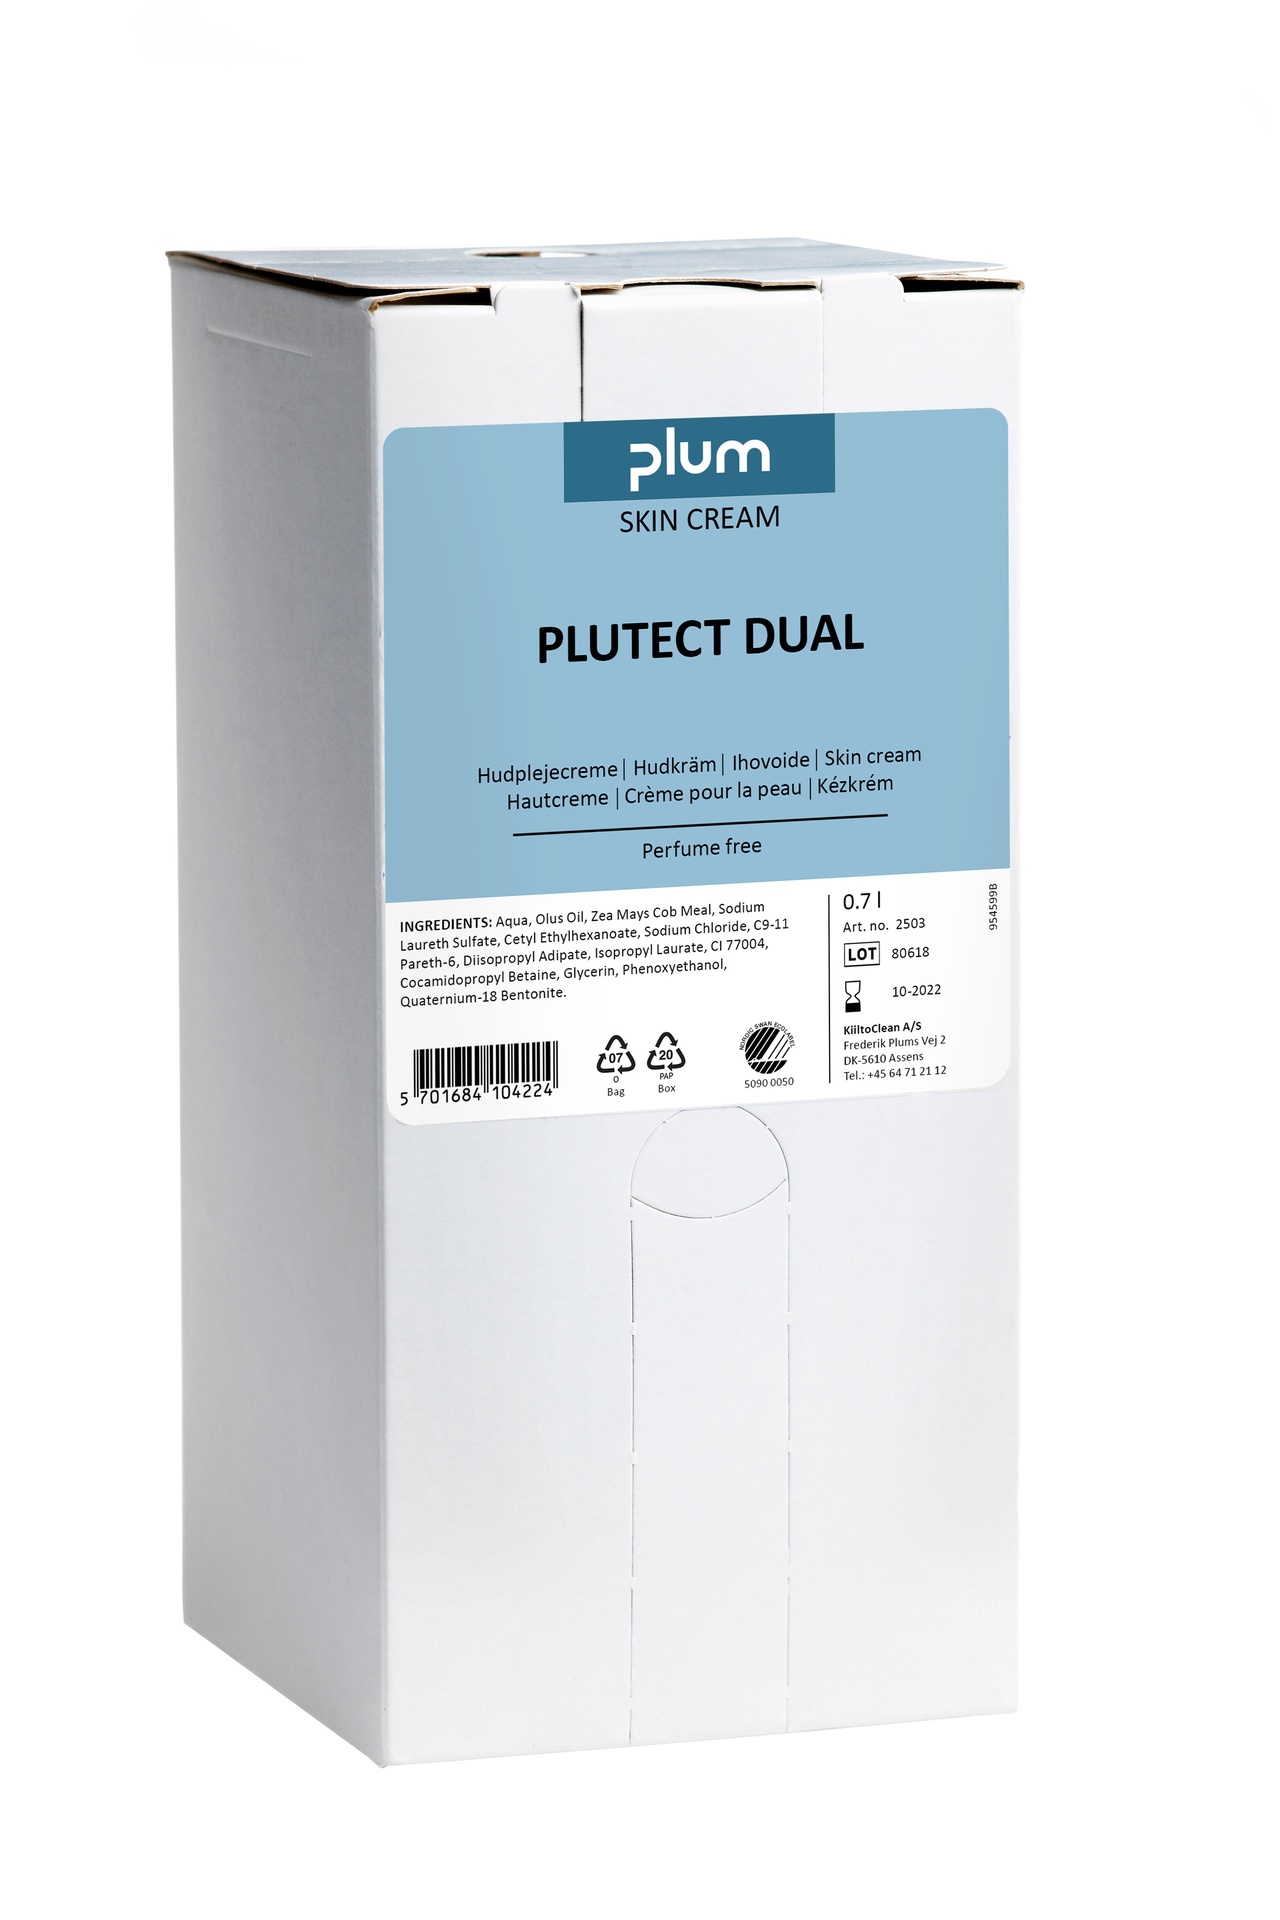 [8563331] Plutect Dual MultiPlum 700ml